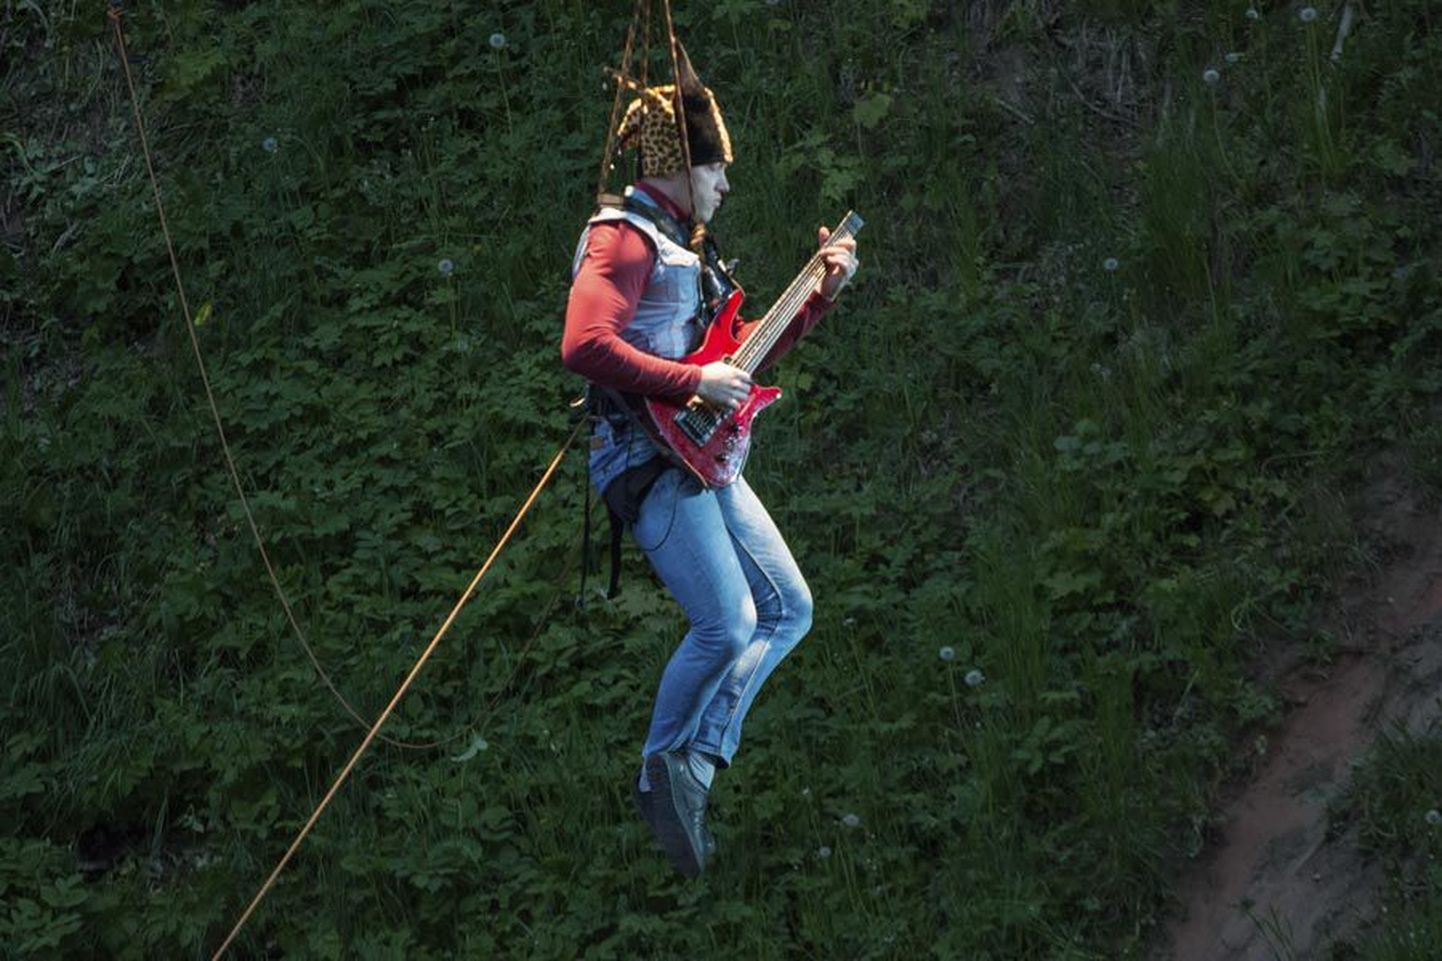 Lavastuse selgrooks oli rippsilla küljes rippuva kitarristi Madis Nõmme ja trummar Rauno Vaheri rokisoolode võistumängimine.